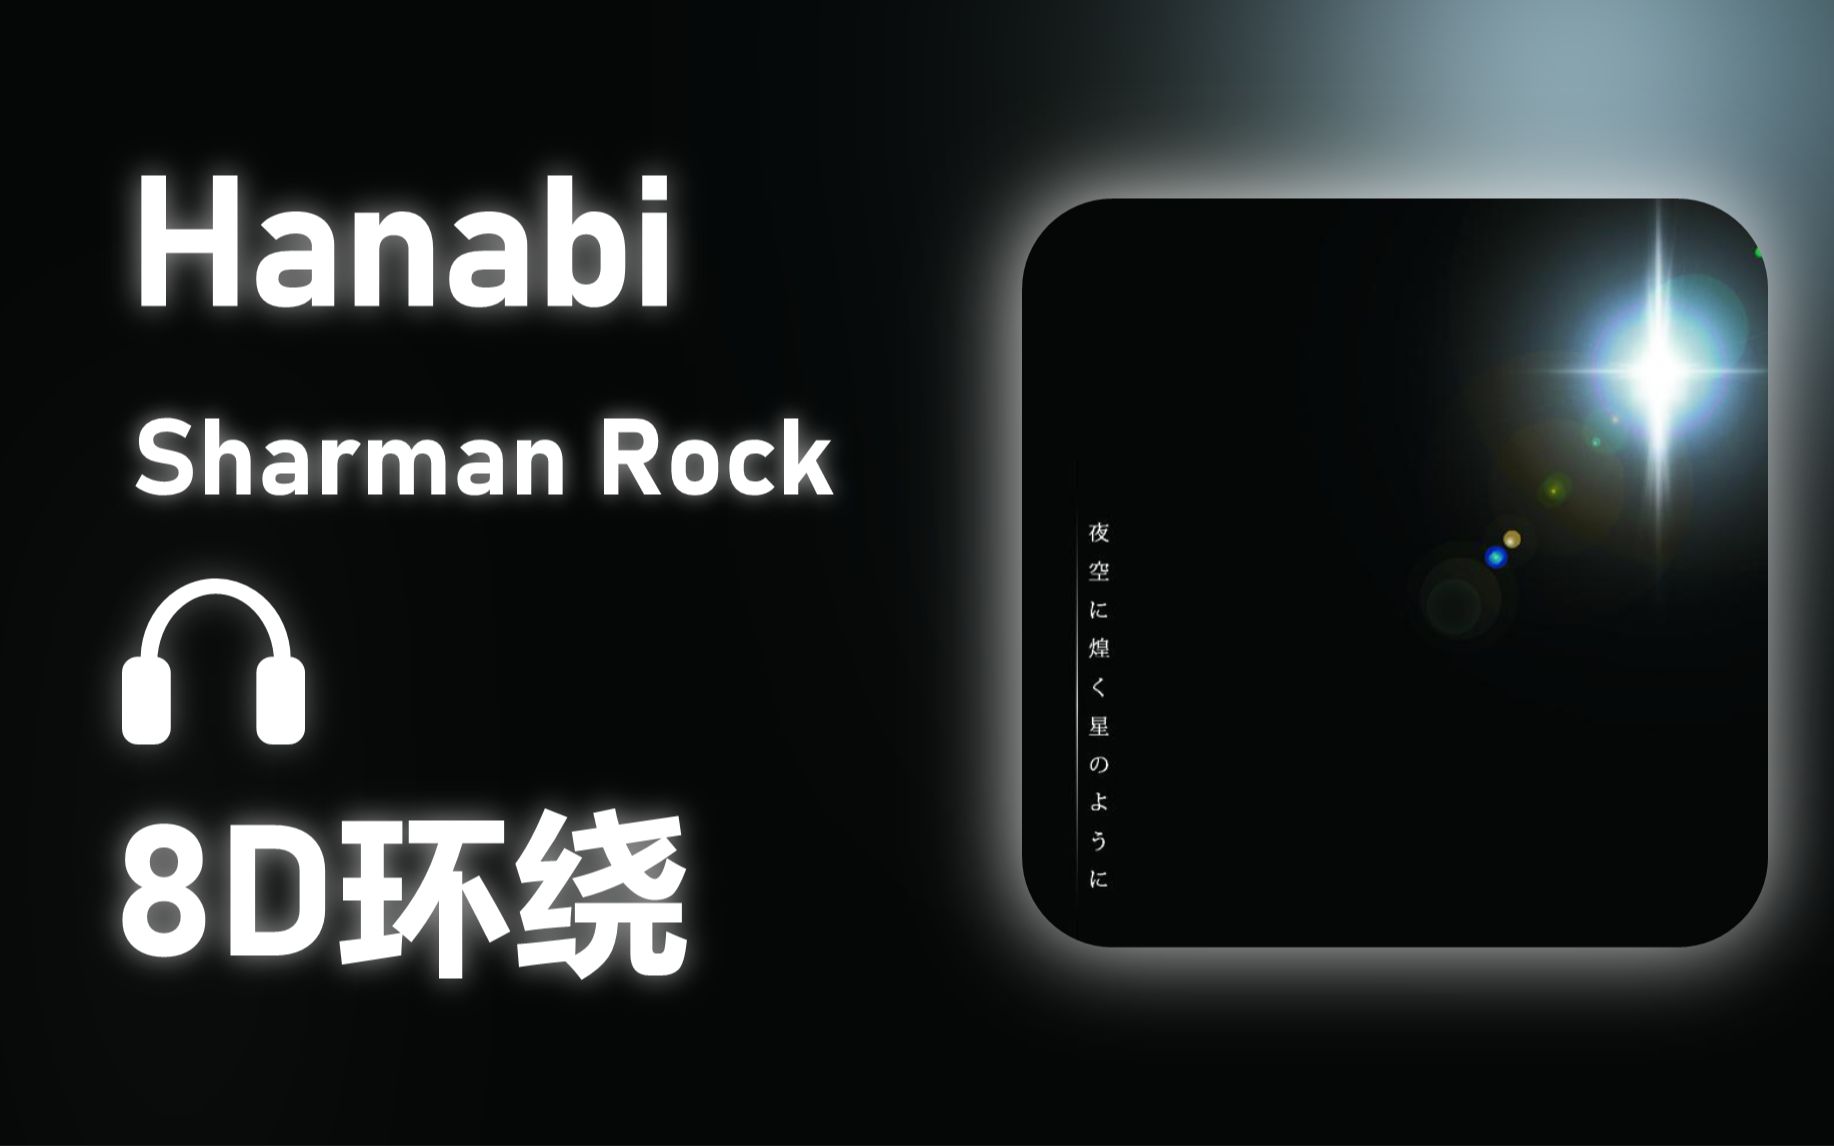 【8D环绕】《Hanabi》-Sharman Rock #501